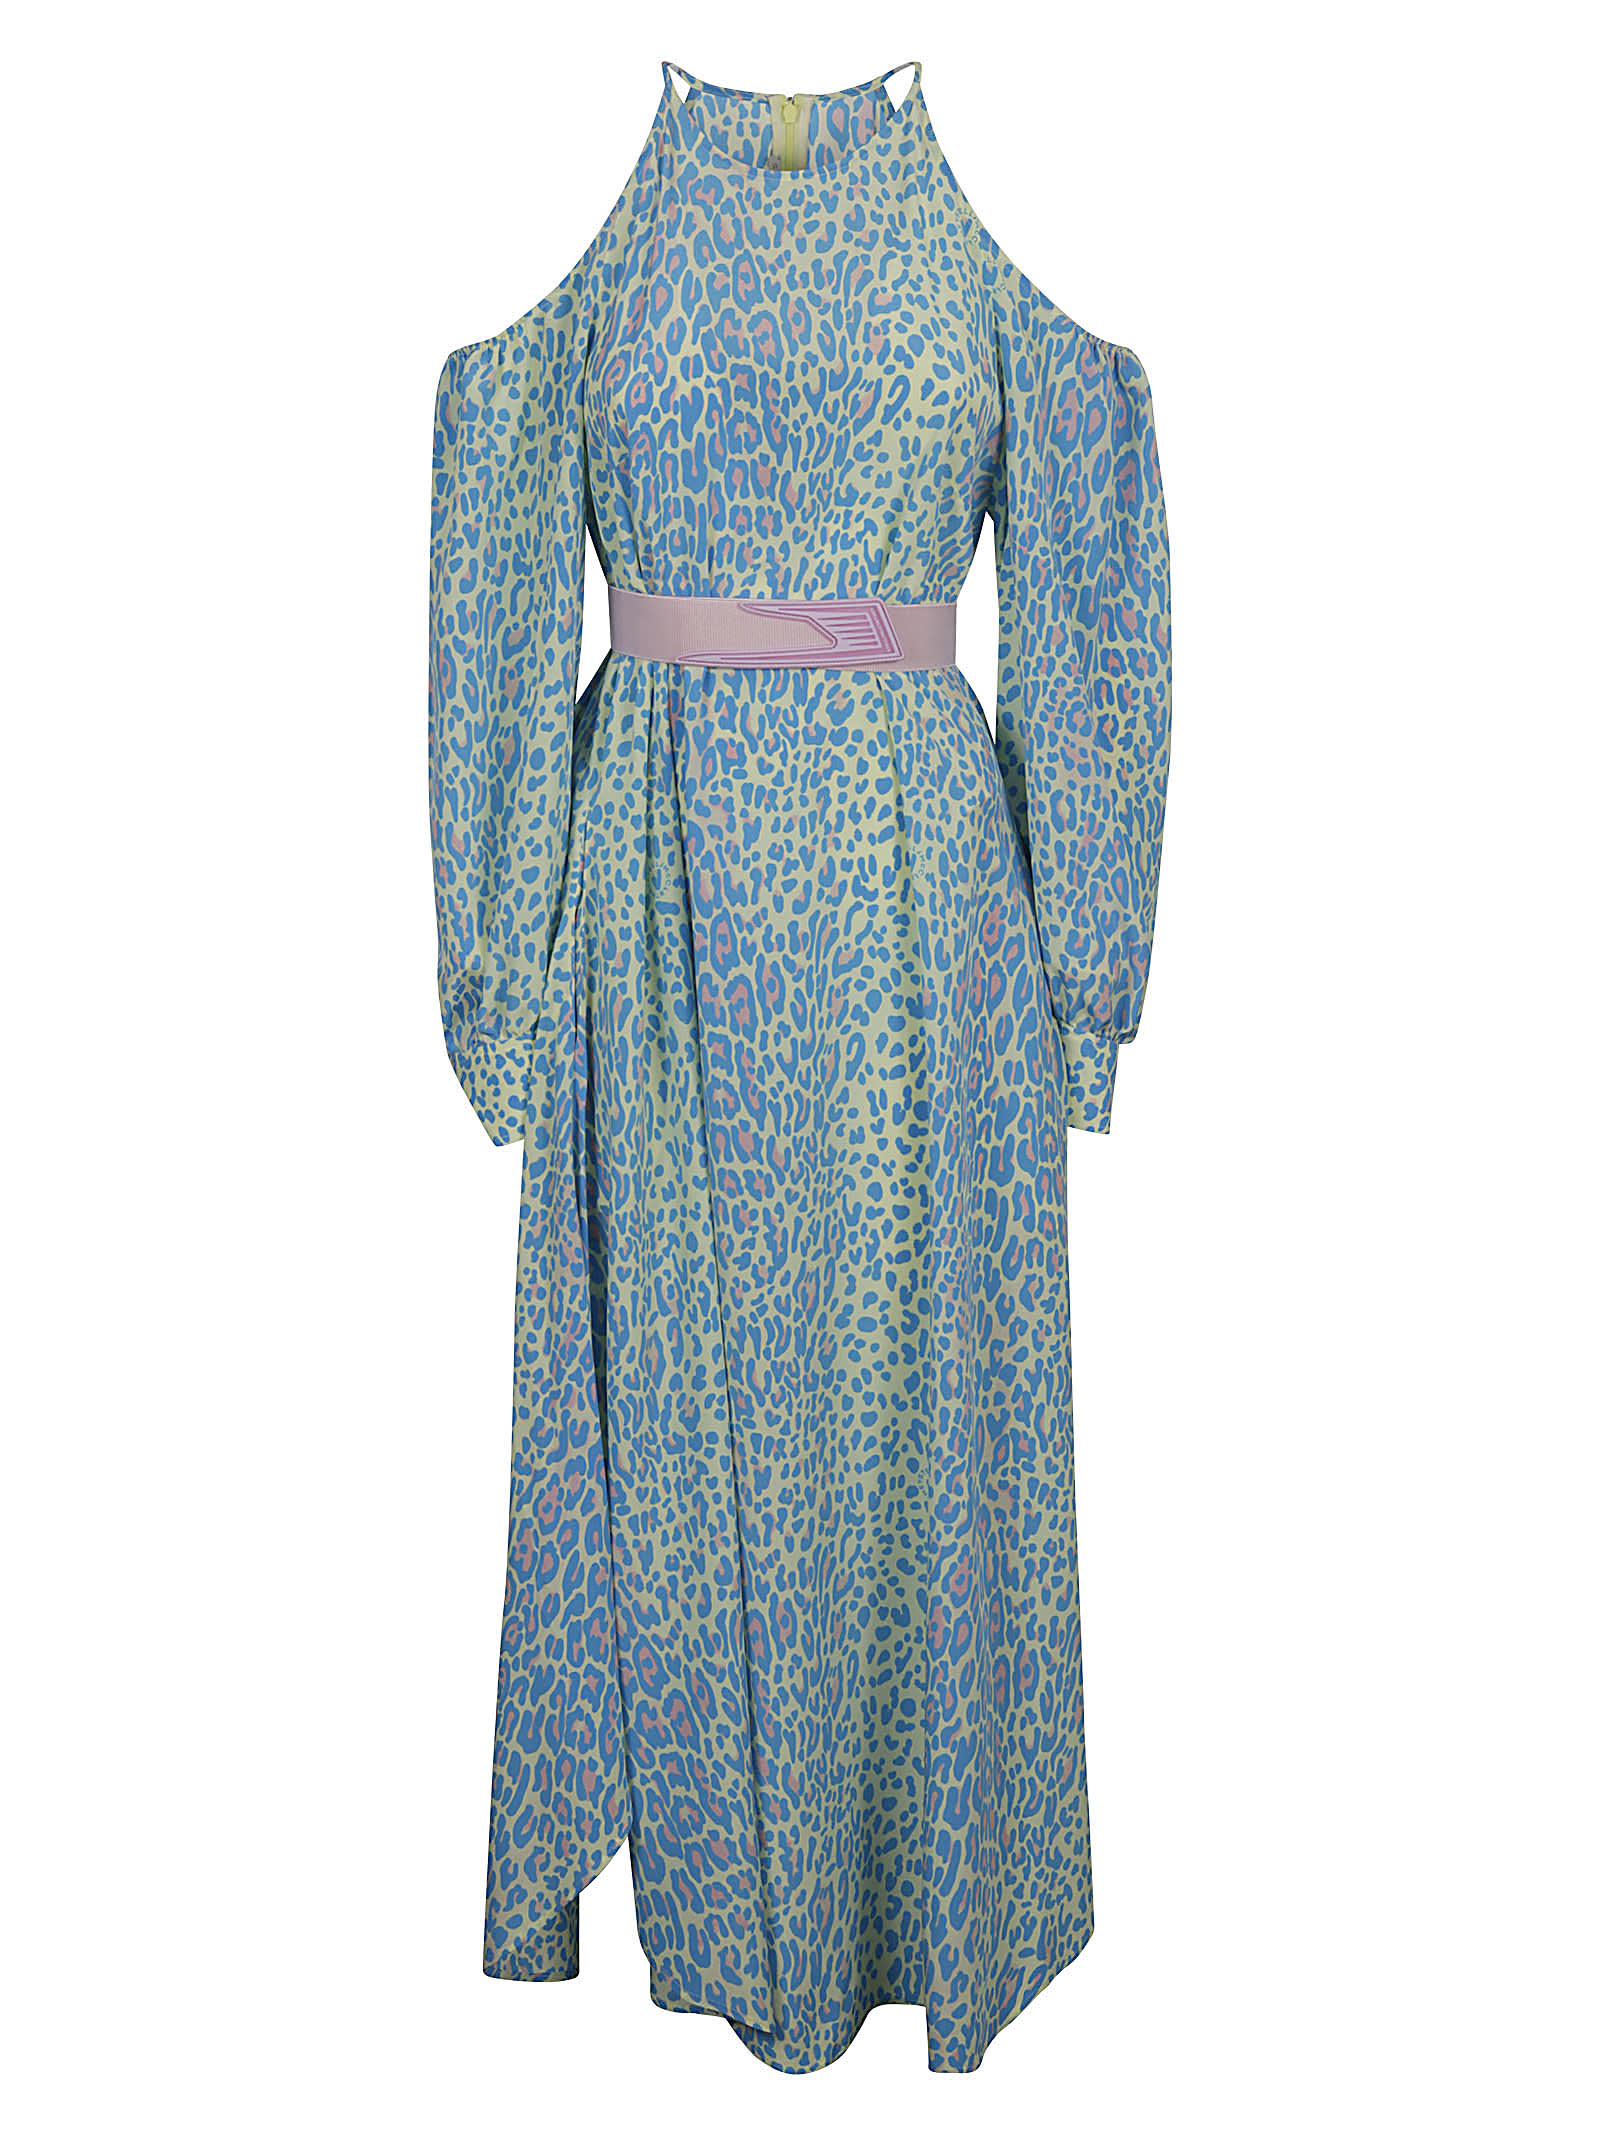 Stella McCartney Shoulder-slit Printed Dress